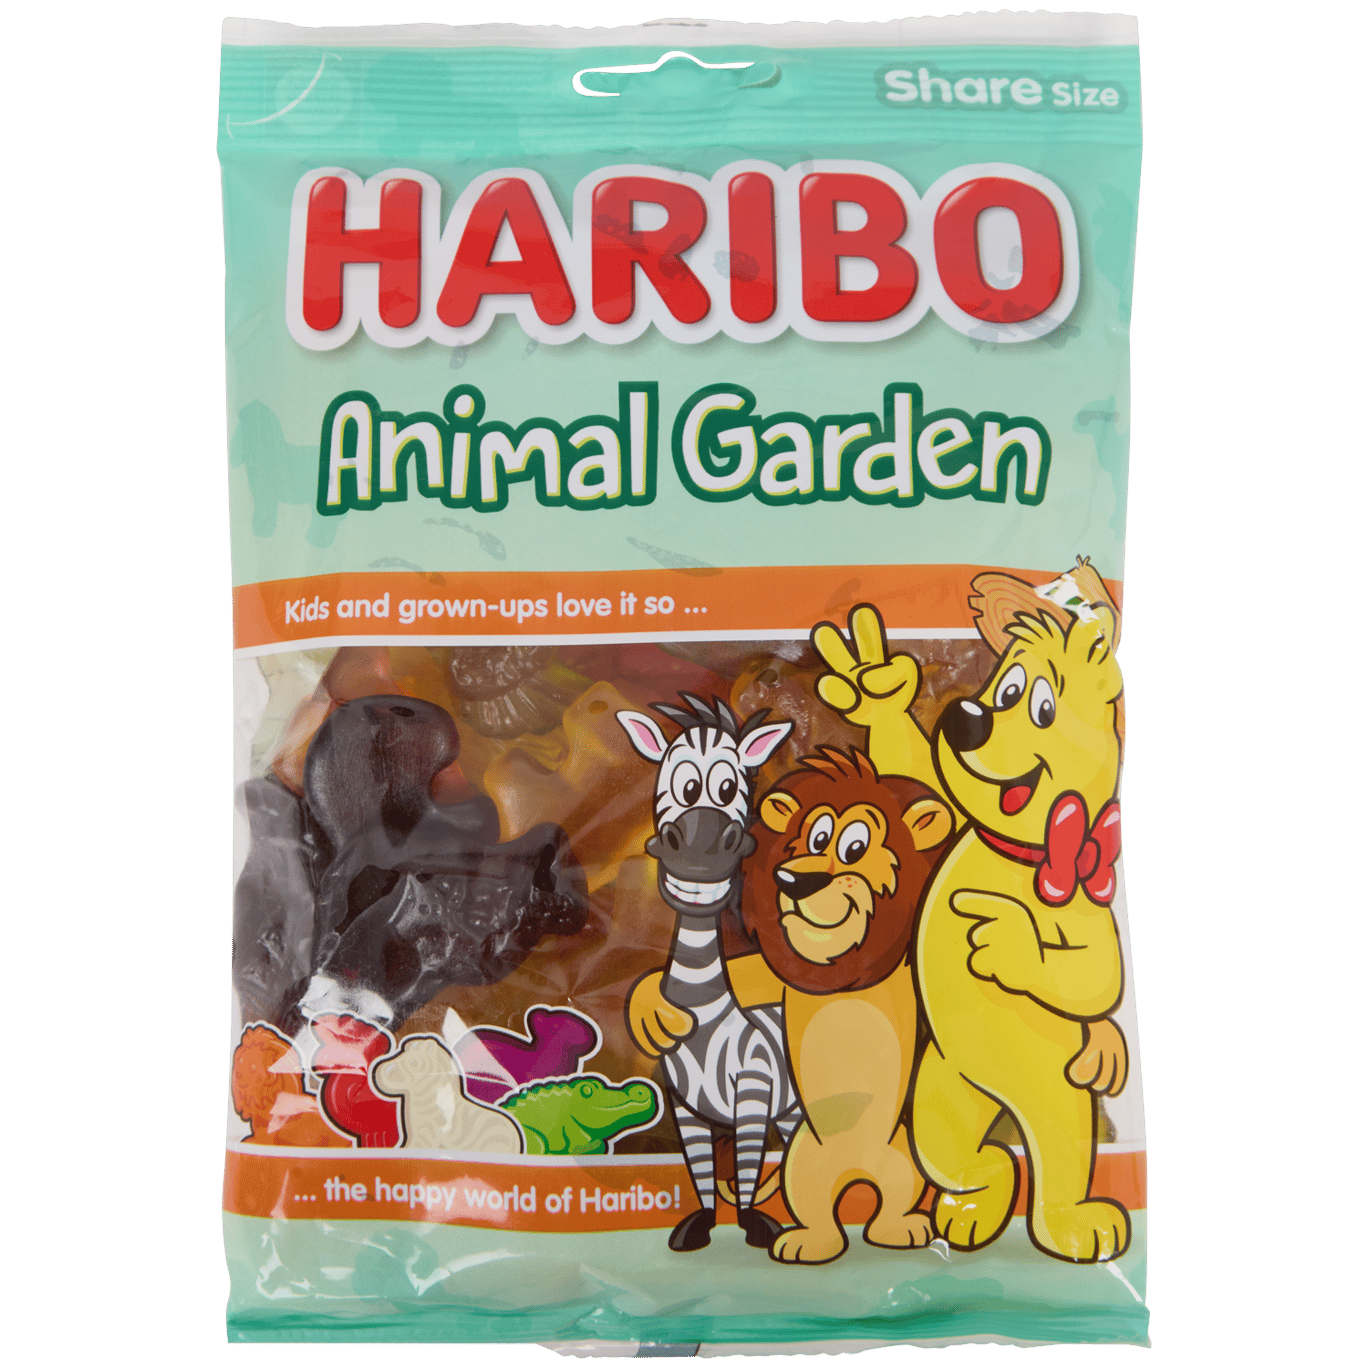 Haribo Animal Garden